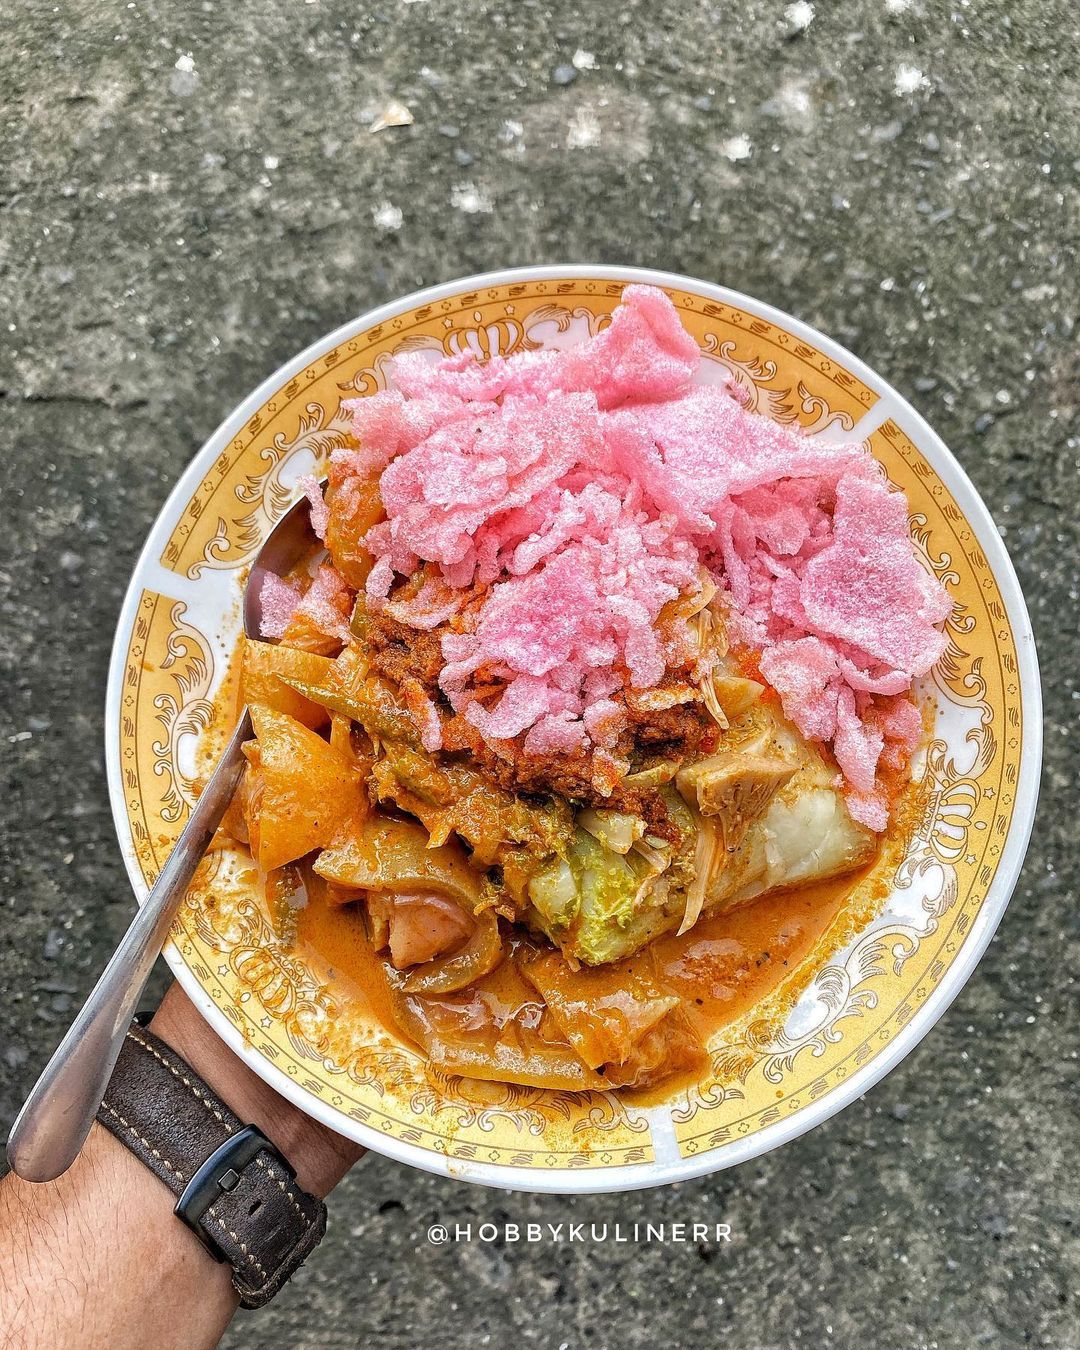 Daftar rekomendasi ketupat sayur Padang enak di Jakarta dan sekitarnya.